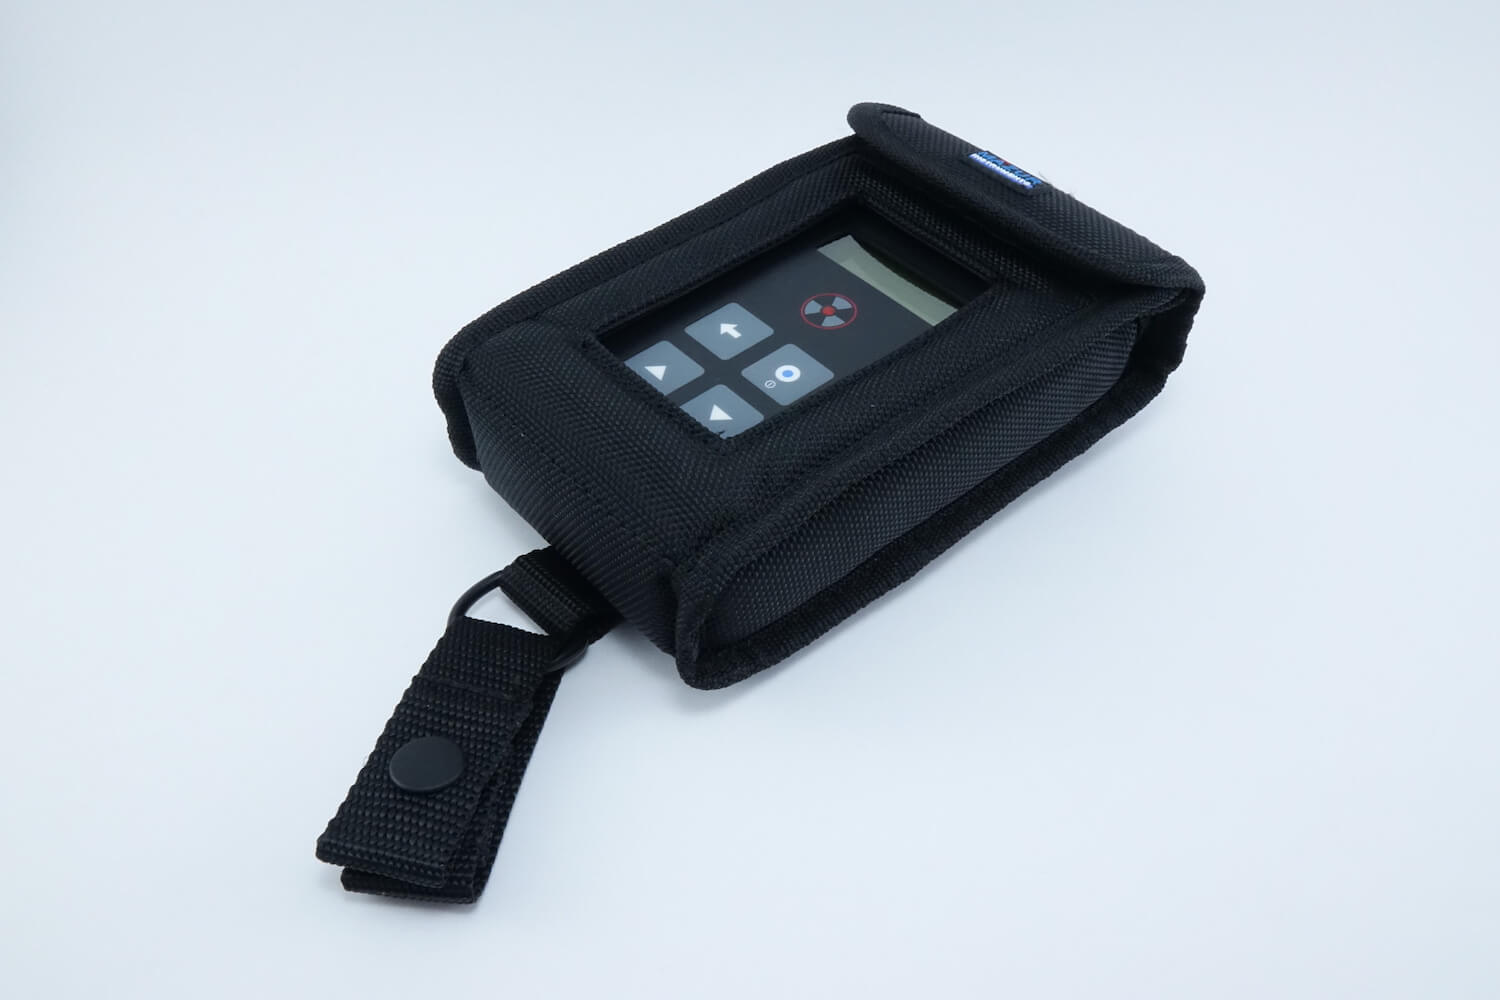 Geigerzähler PRM-9000 inkl. Schutztasche